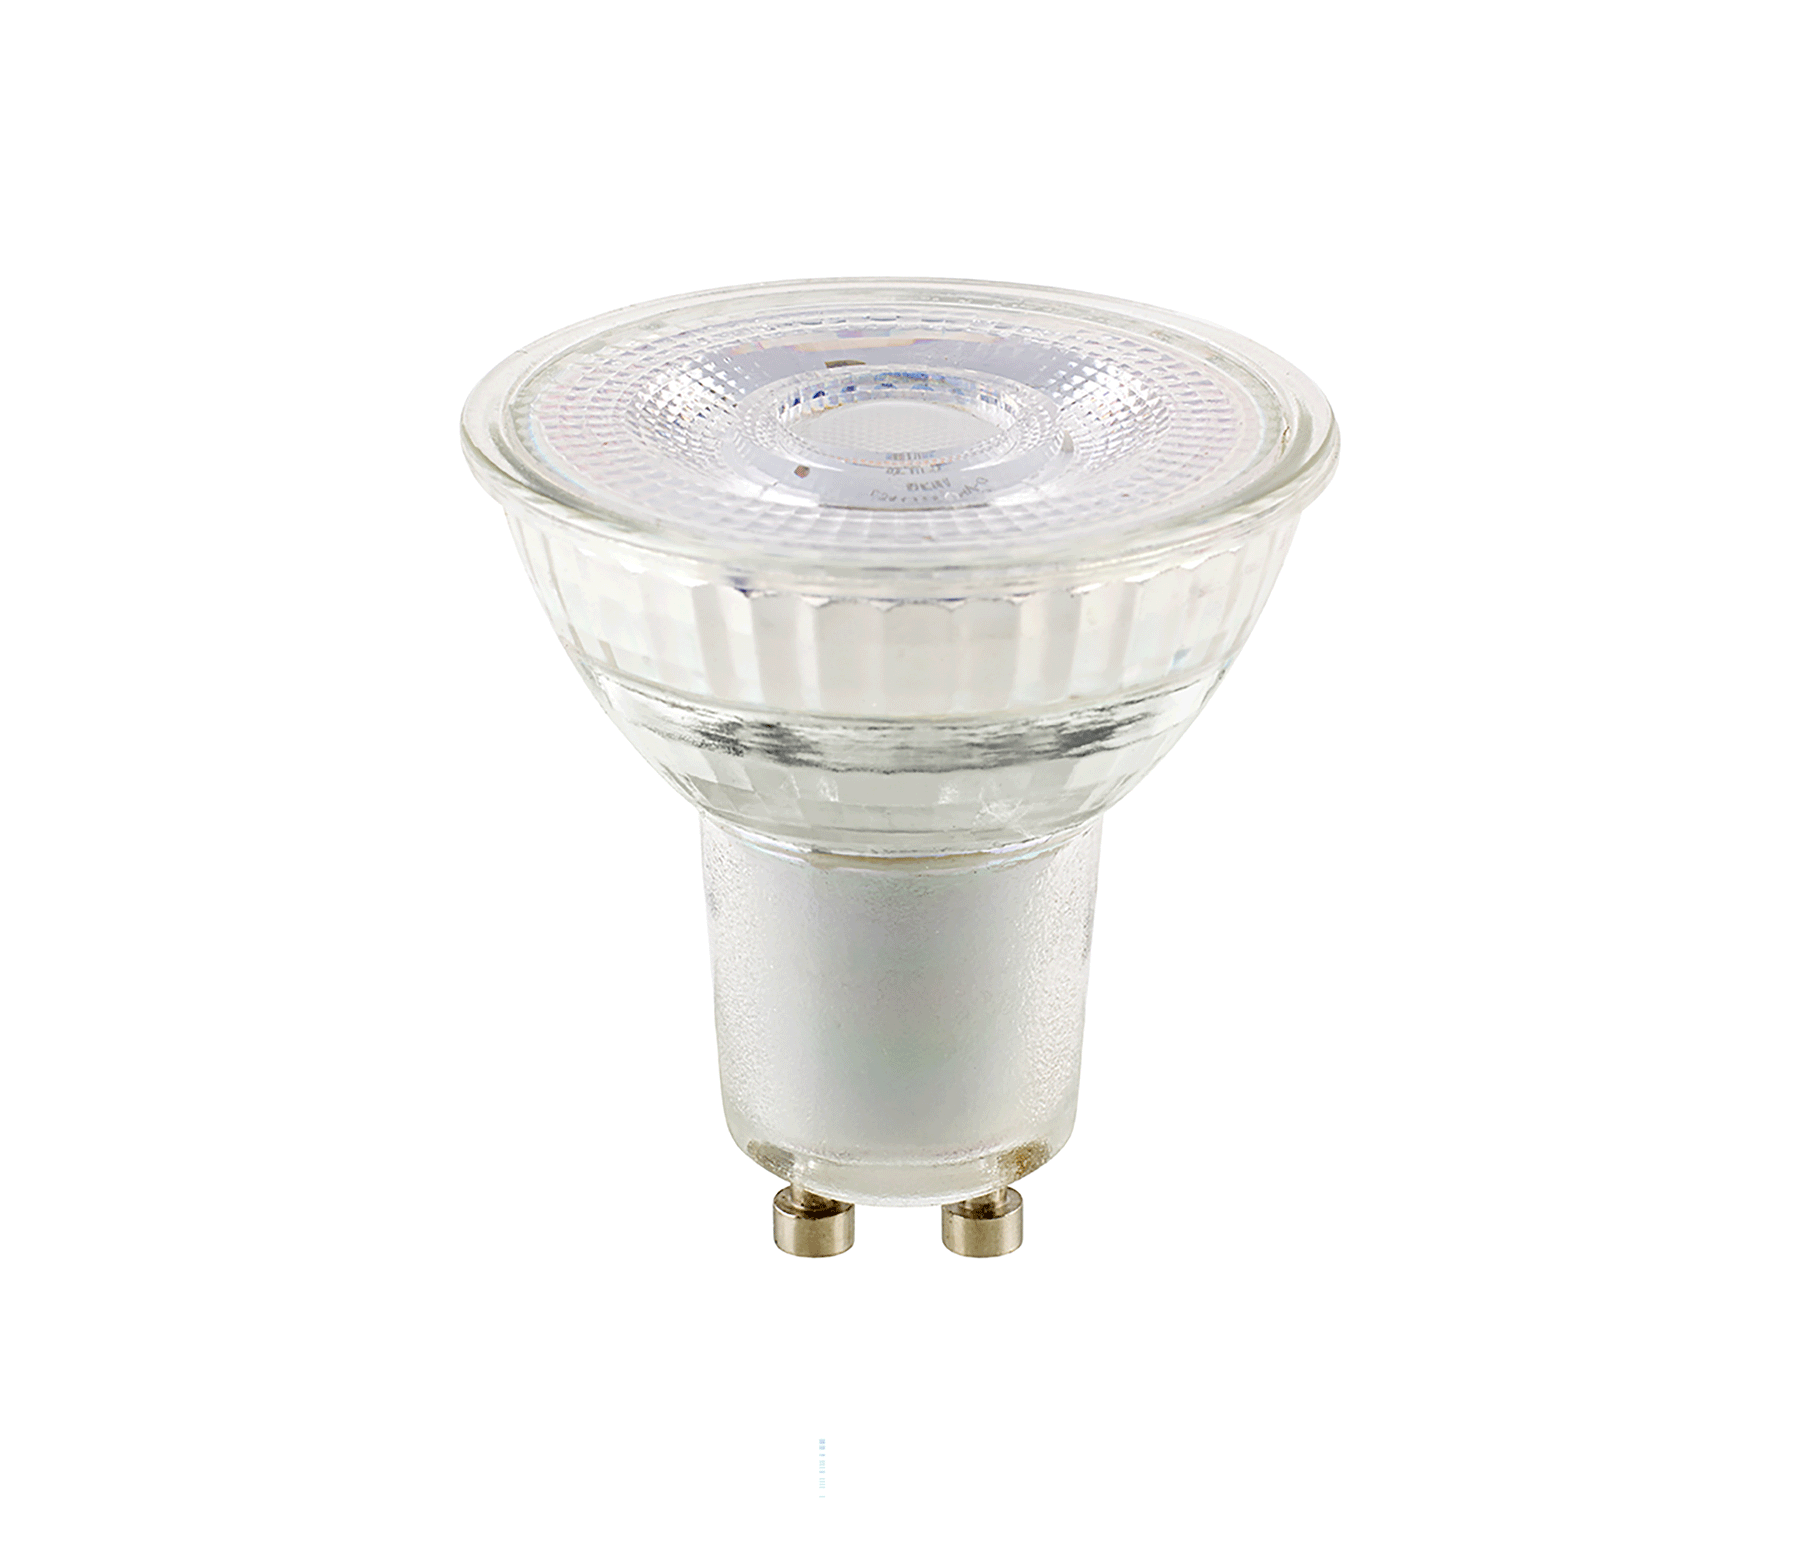 Sigor LED Reflektorlampe Luxar PAR16 7,4 W GU10